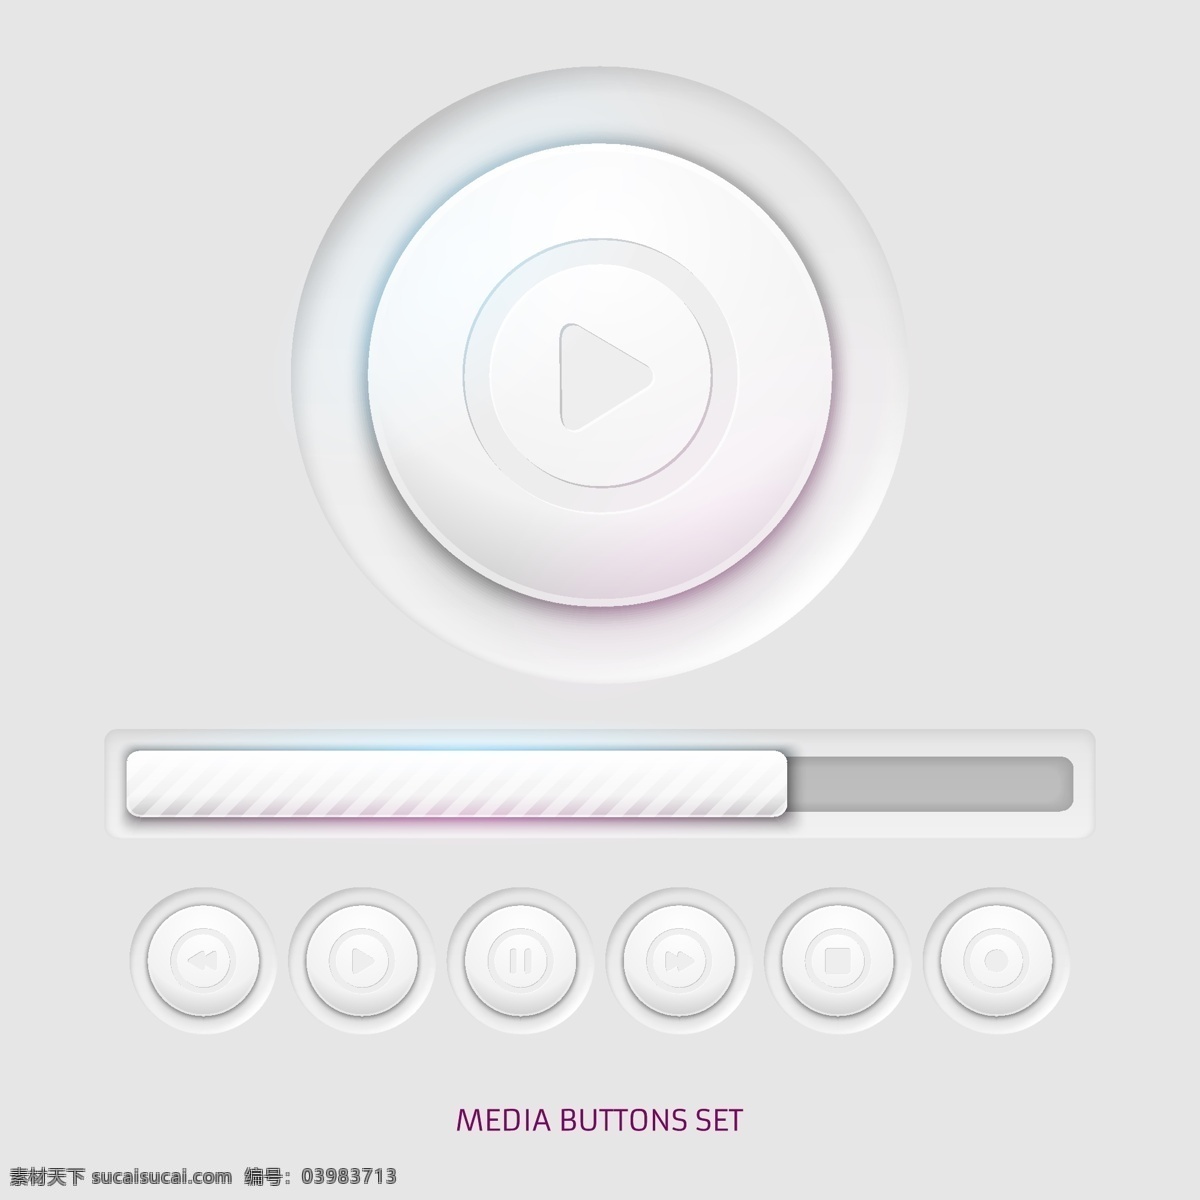 媒体播放器 按钮 音乐 图标 圆形 视频 游戏 媒体 用户 符号 播放按钮 音频 多媒体 音乐图标 界面 视频播放器 播放器 控制 面板 用户图标 白色